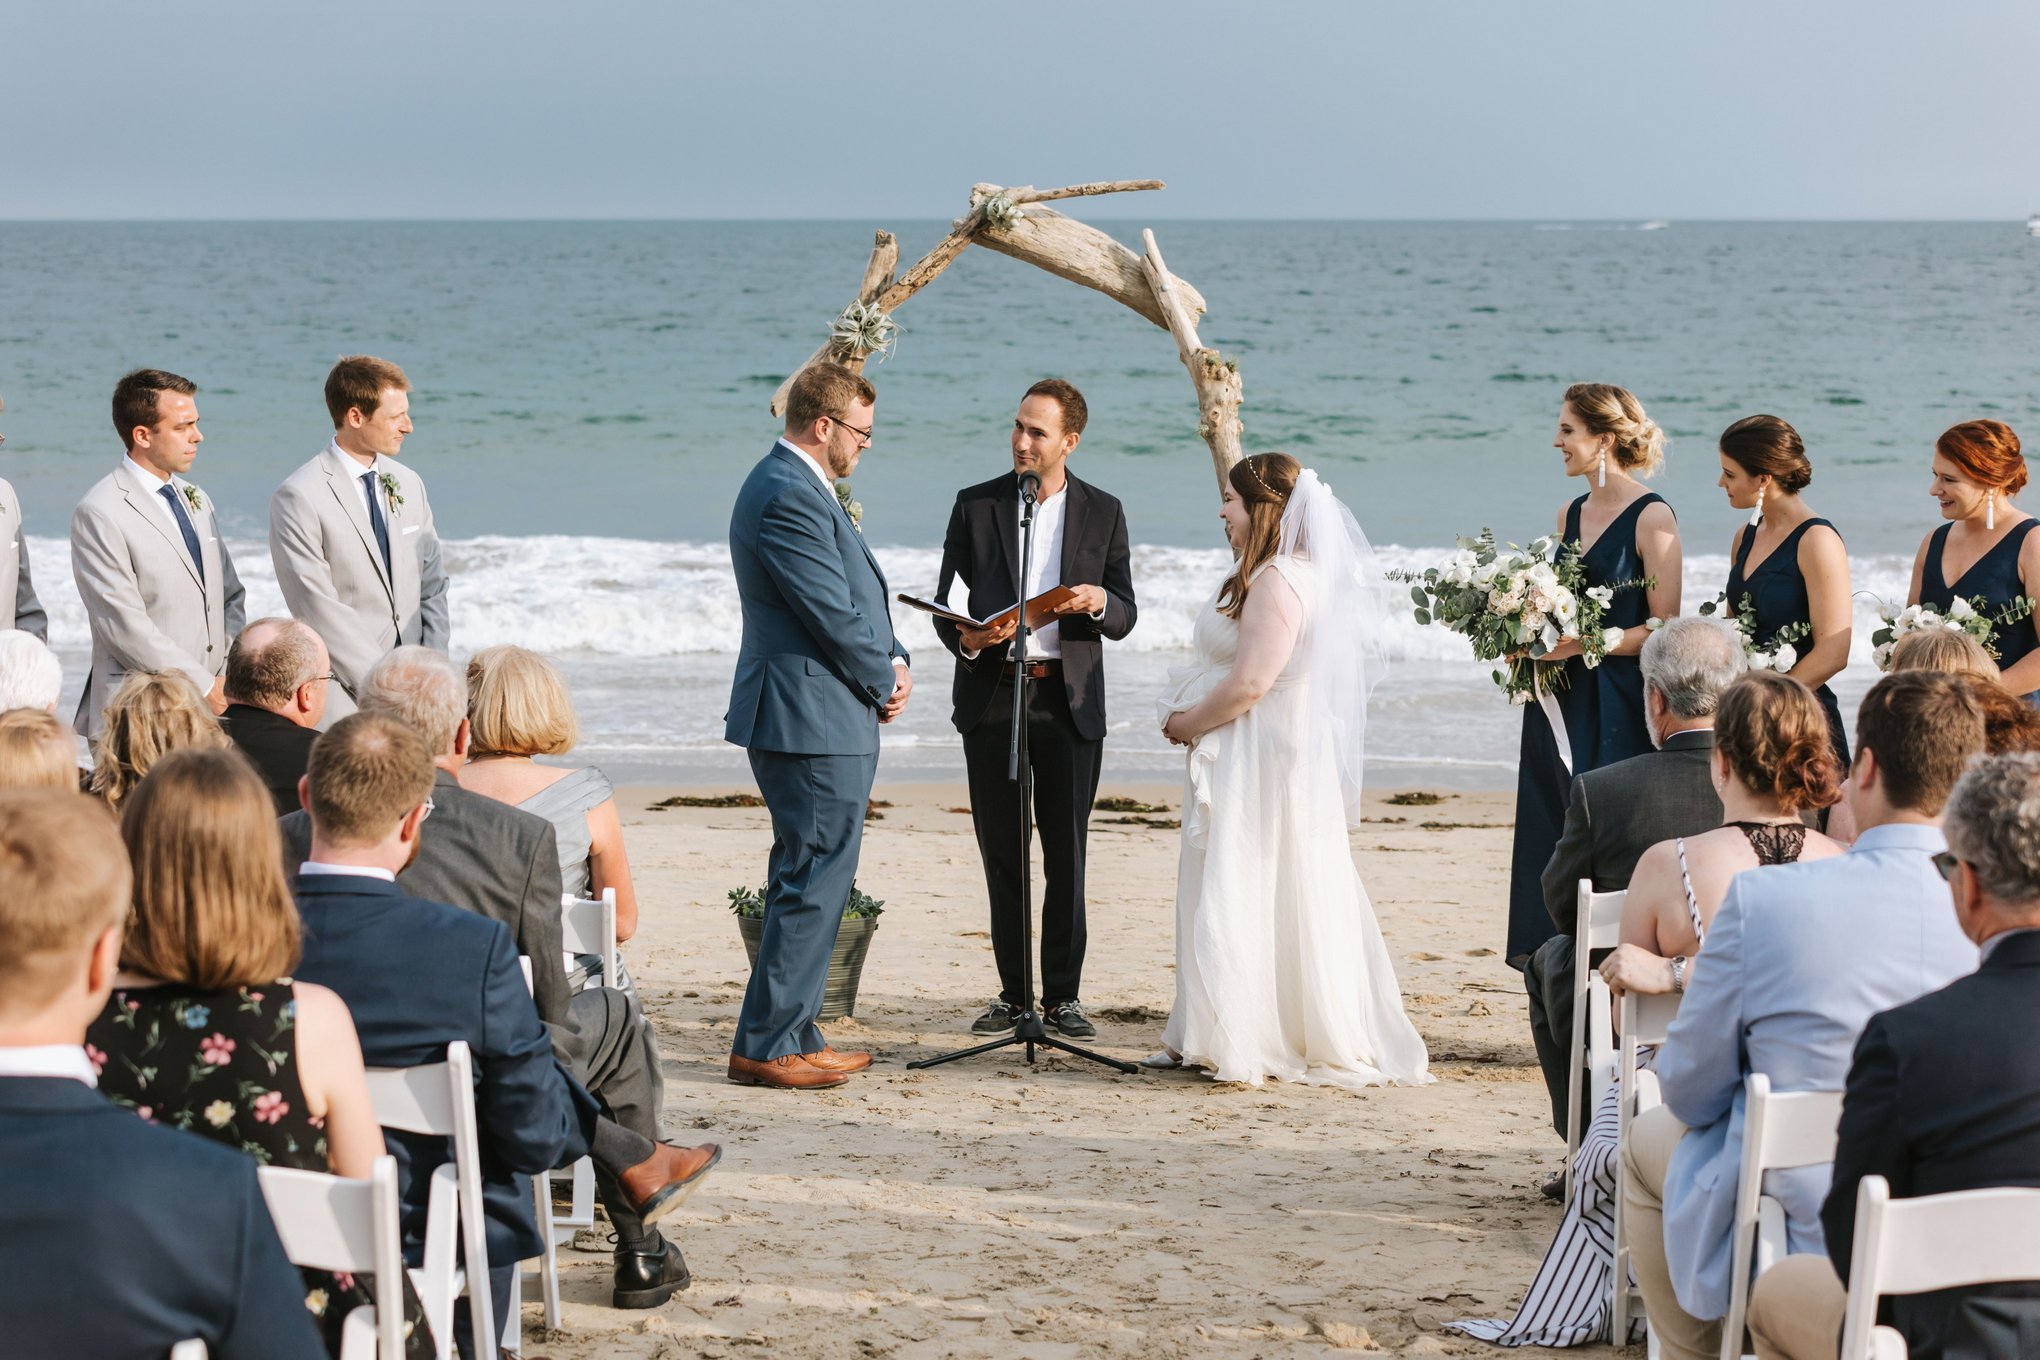 A DIY backyard beach wedding in Westerly, Rhode Island